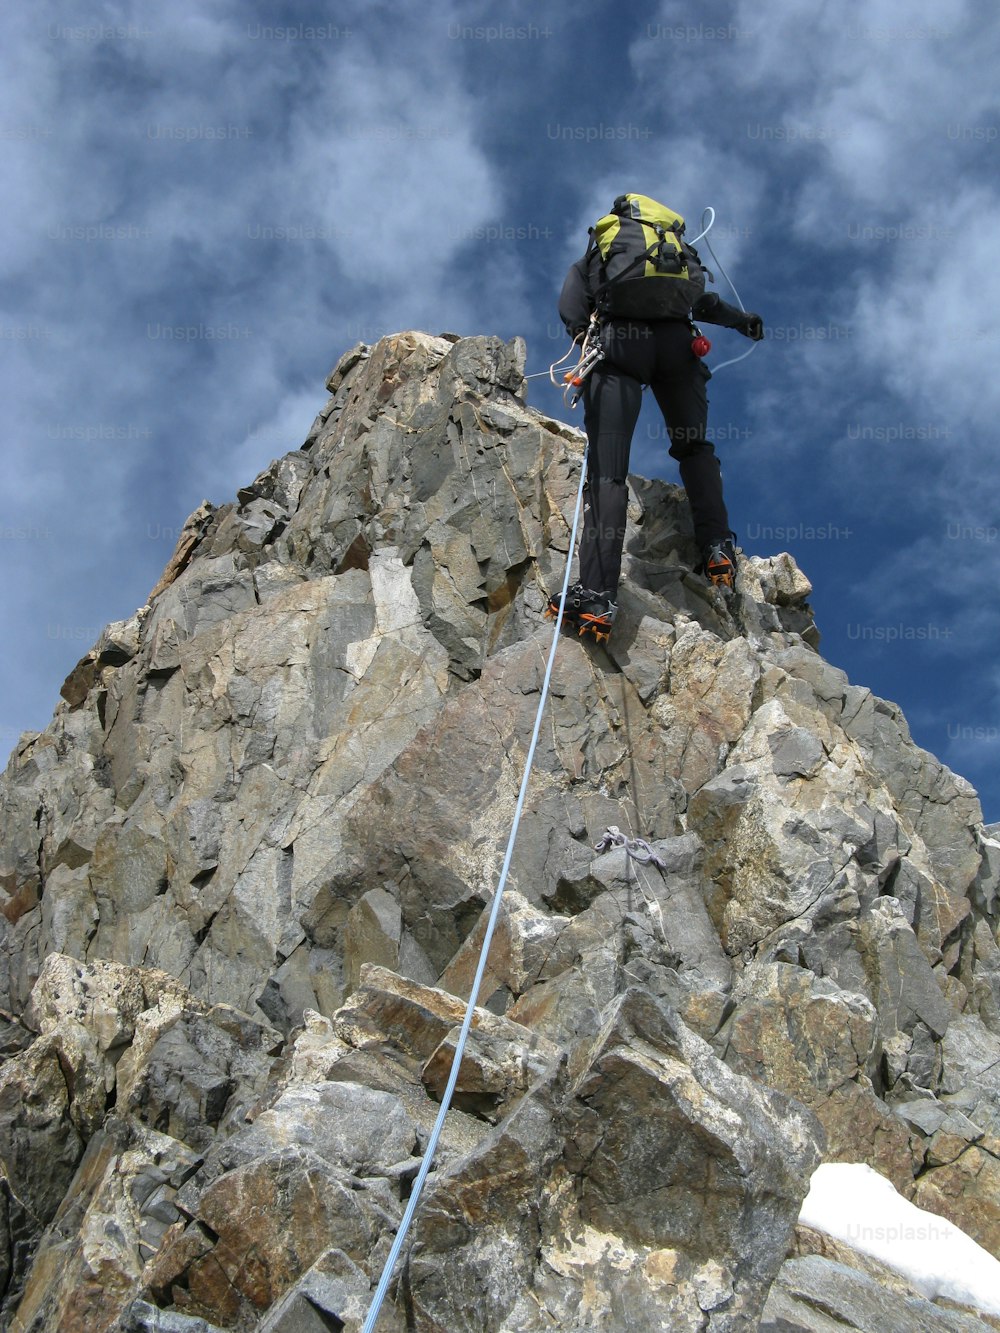 スイスのアルプス山脈にある細長いビアンコグラート尾根を懸垂下降し、人里離れたピッツ・ベルニナの山頂に向かう登山者